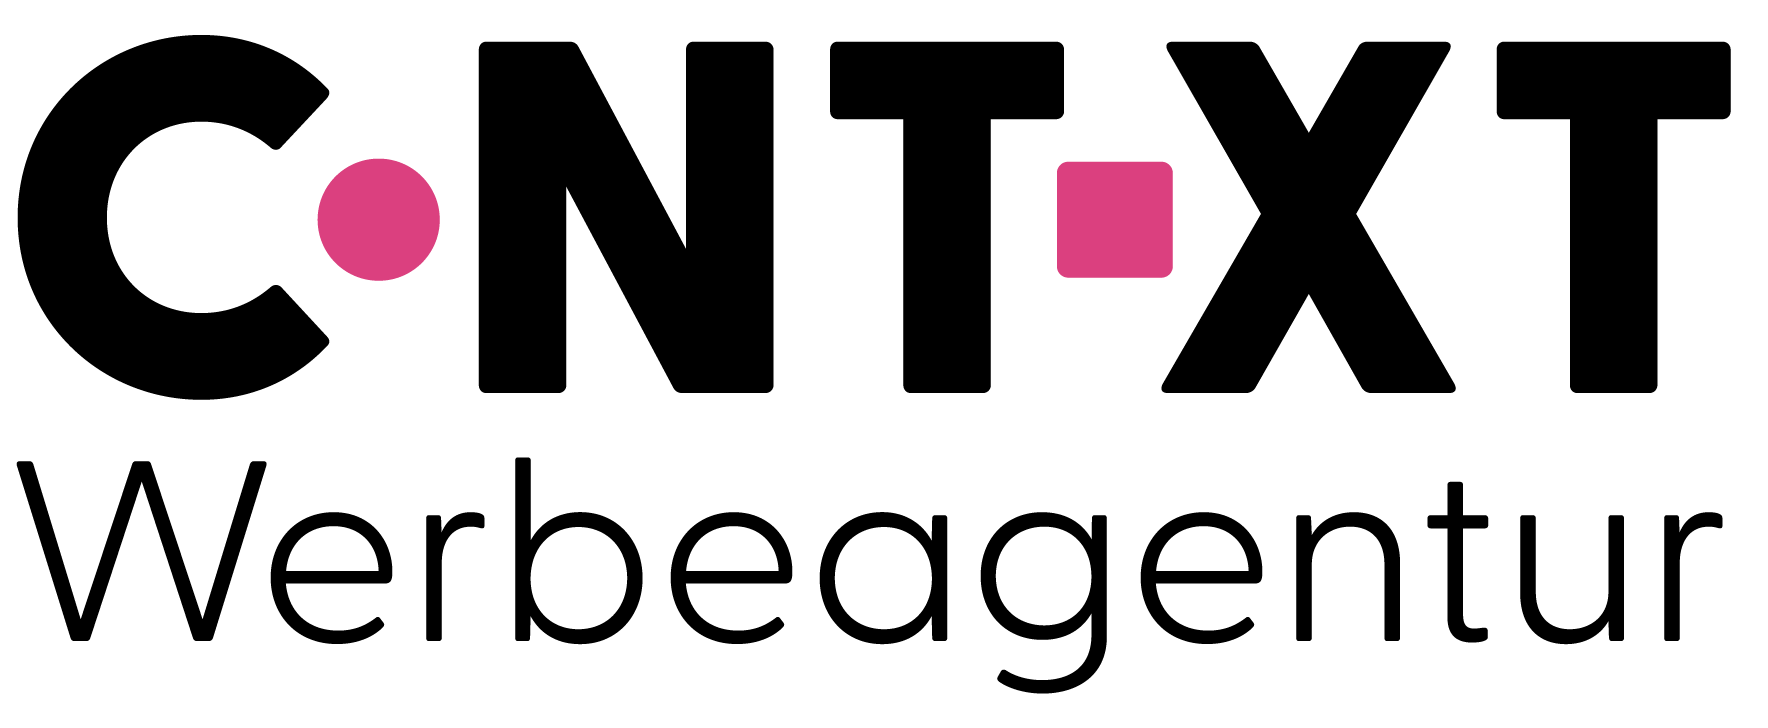 CNTXT Werbeagentur e. U. Logo